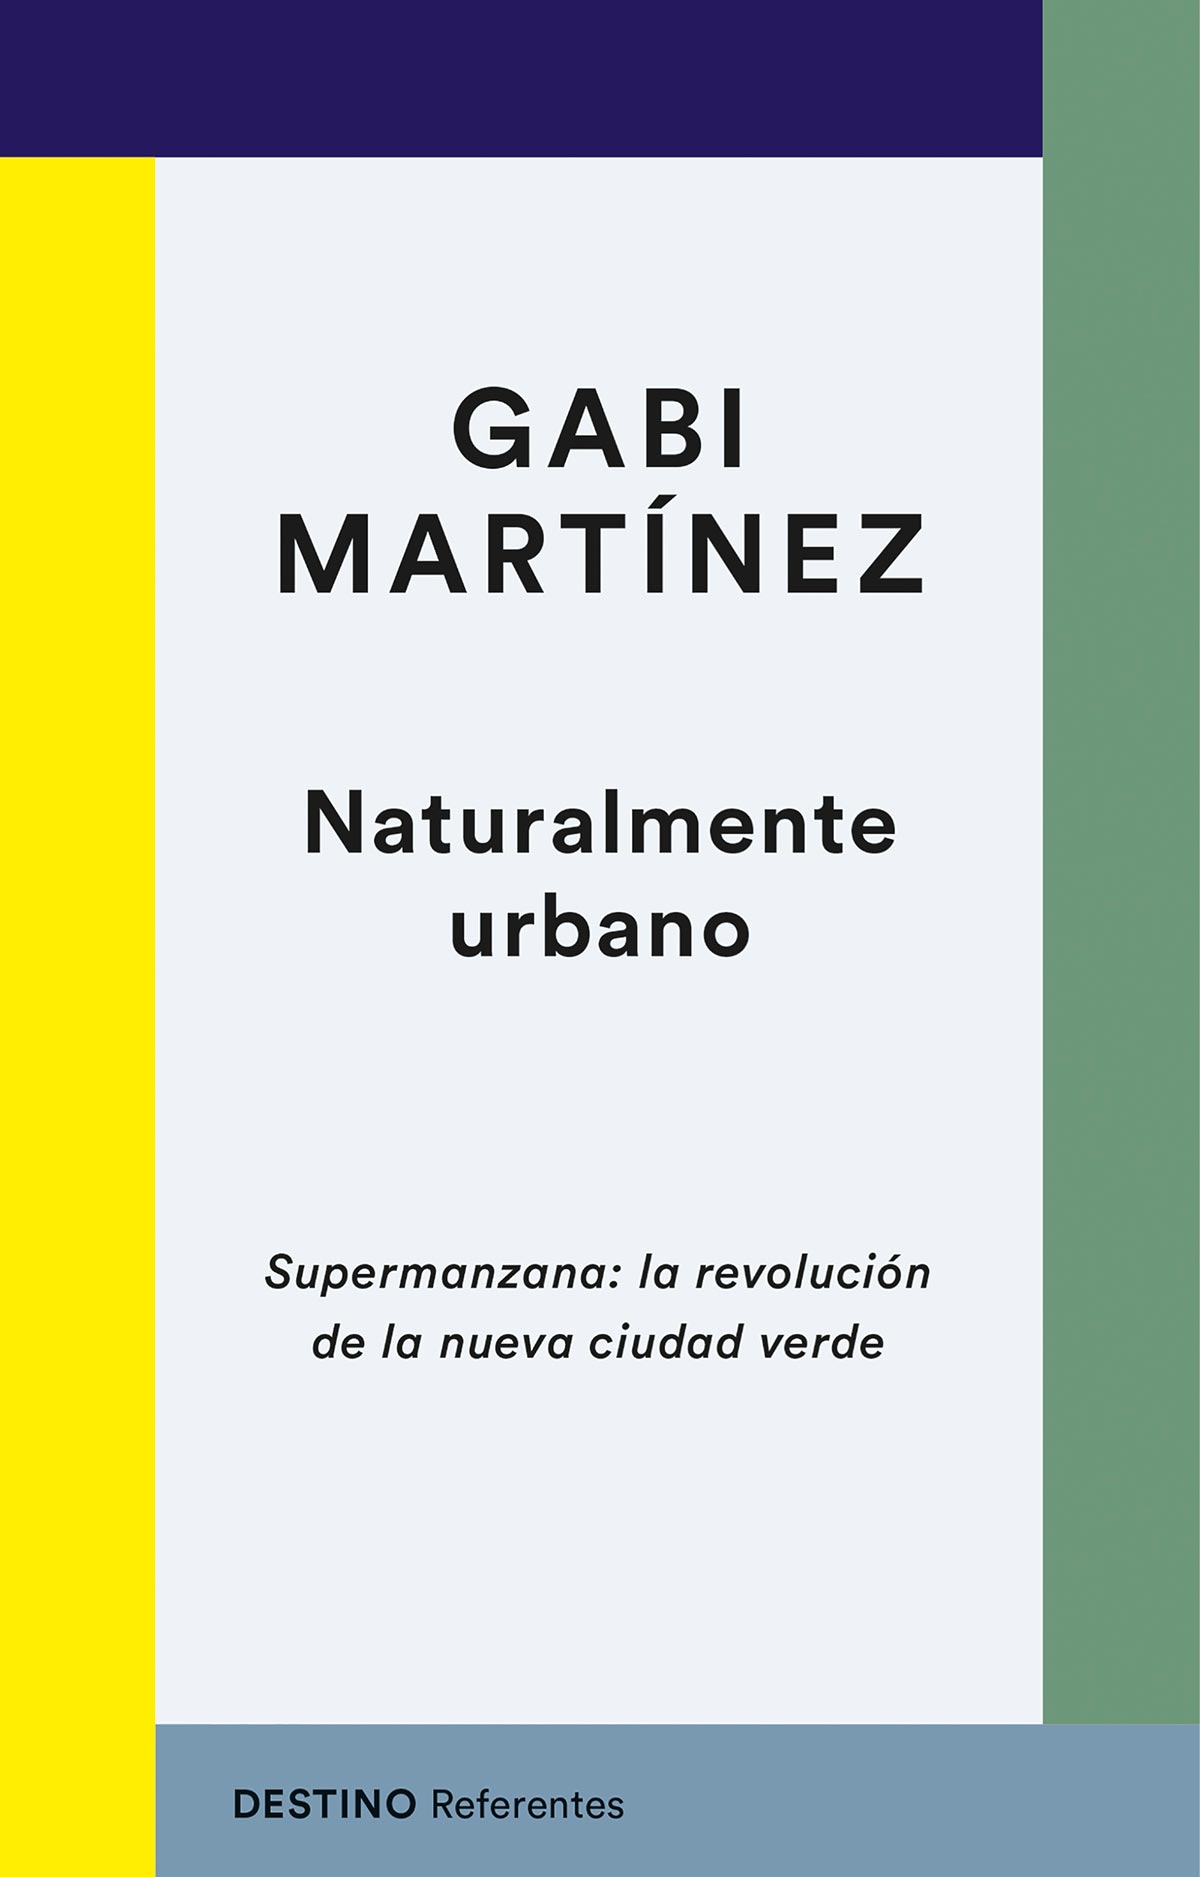 Gabi Martínez: «Es muy importante articular y visibilizar relatos que vengan a traer un cambio de conciencia colectivo»